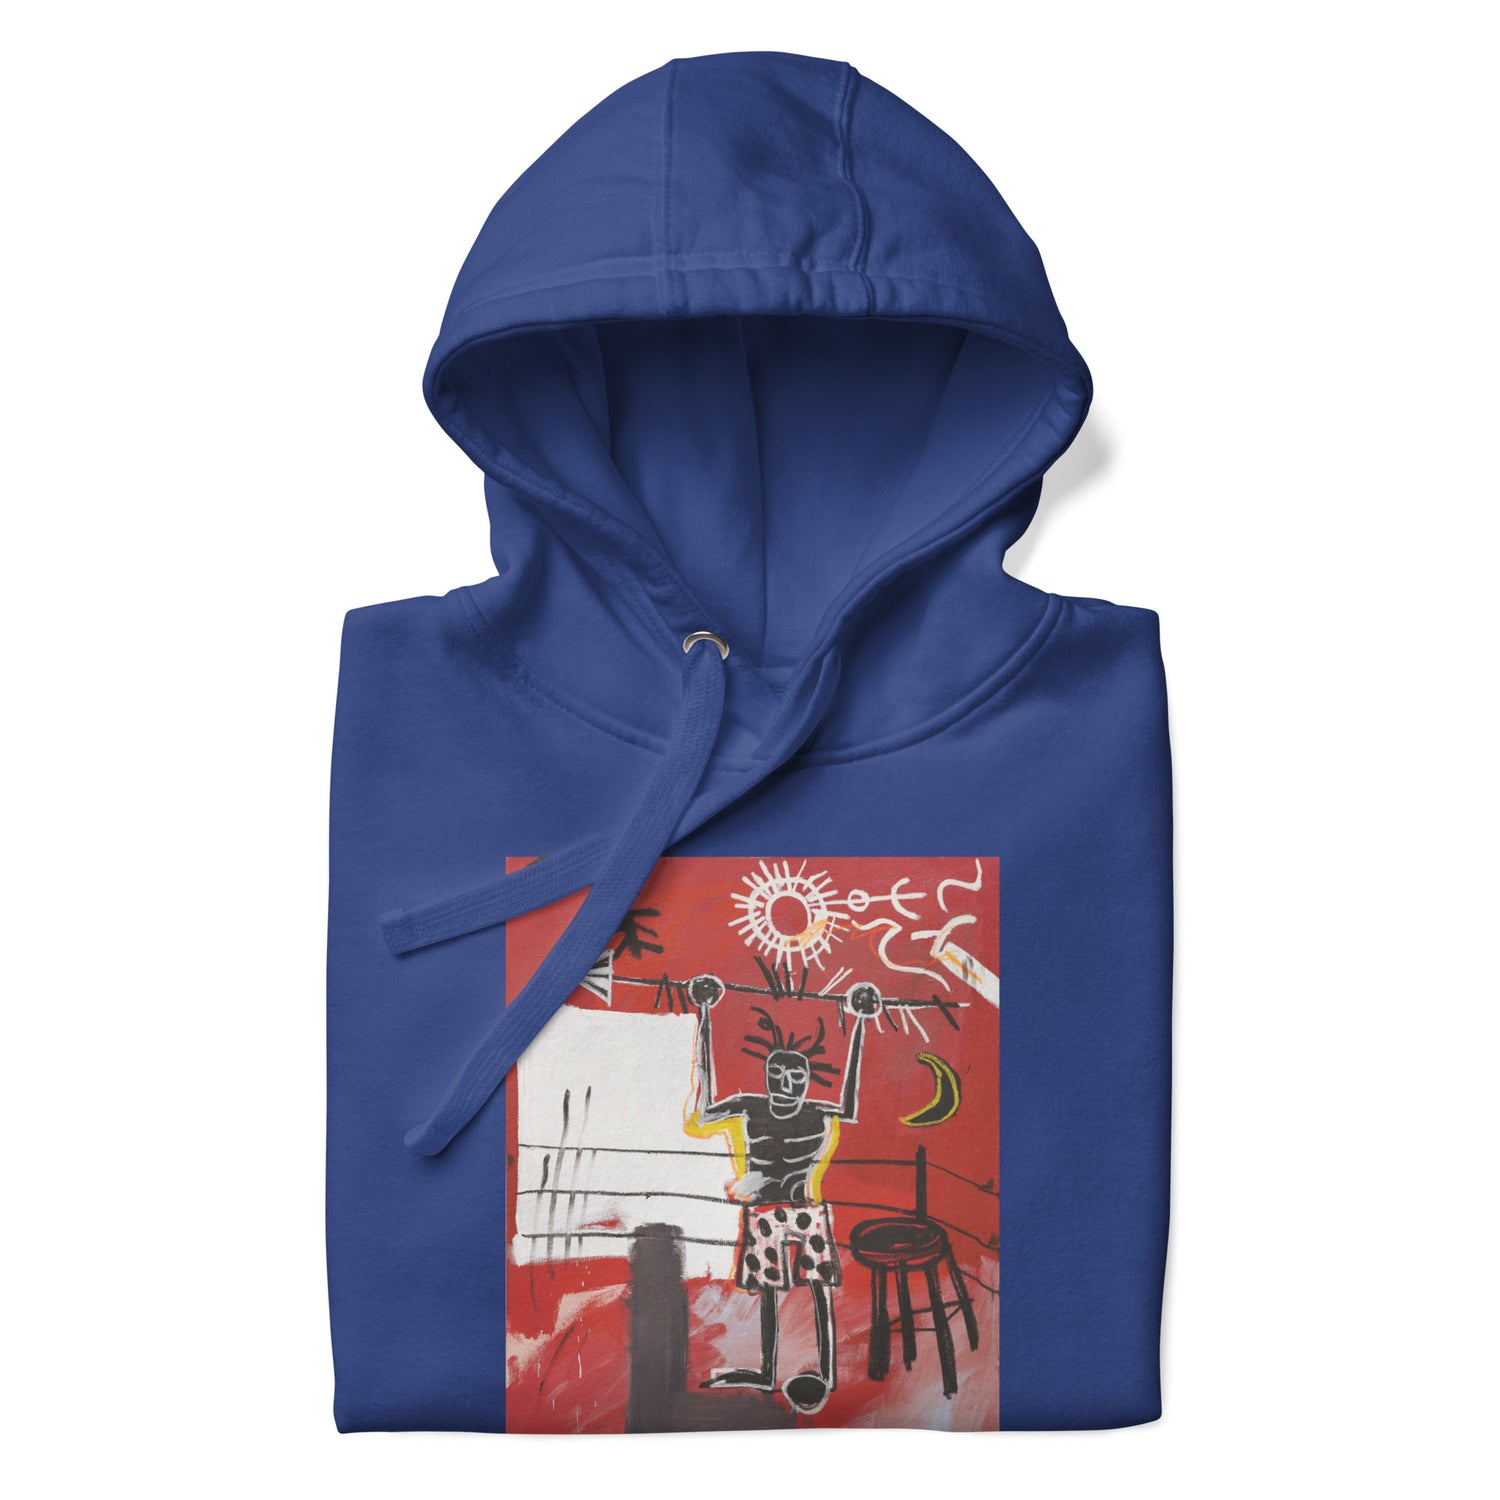 Jean-Michel Basquiat "The Ring" Artwork Printed Premium Streetwear Sweatshirt Hoodie Royal Blue